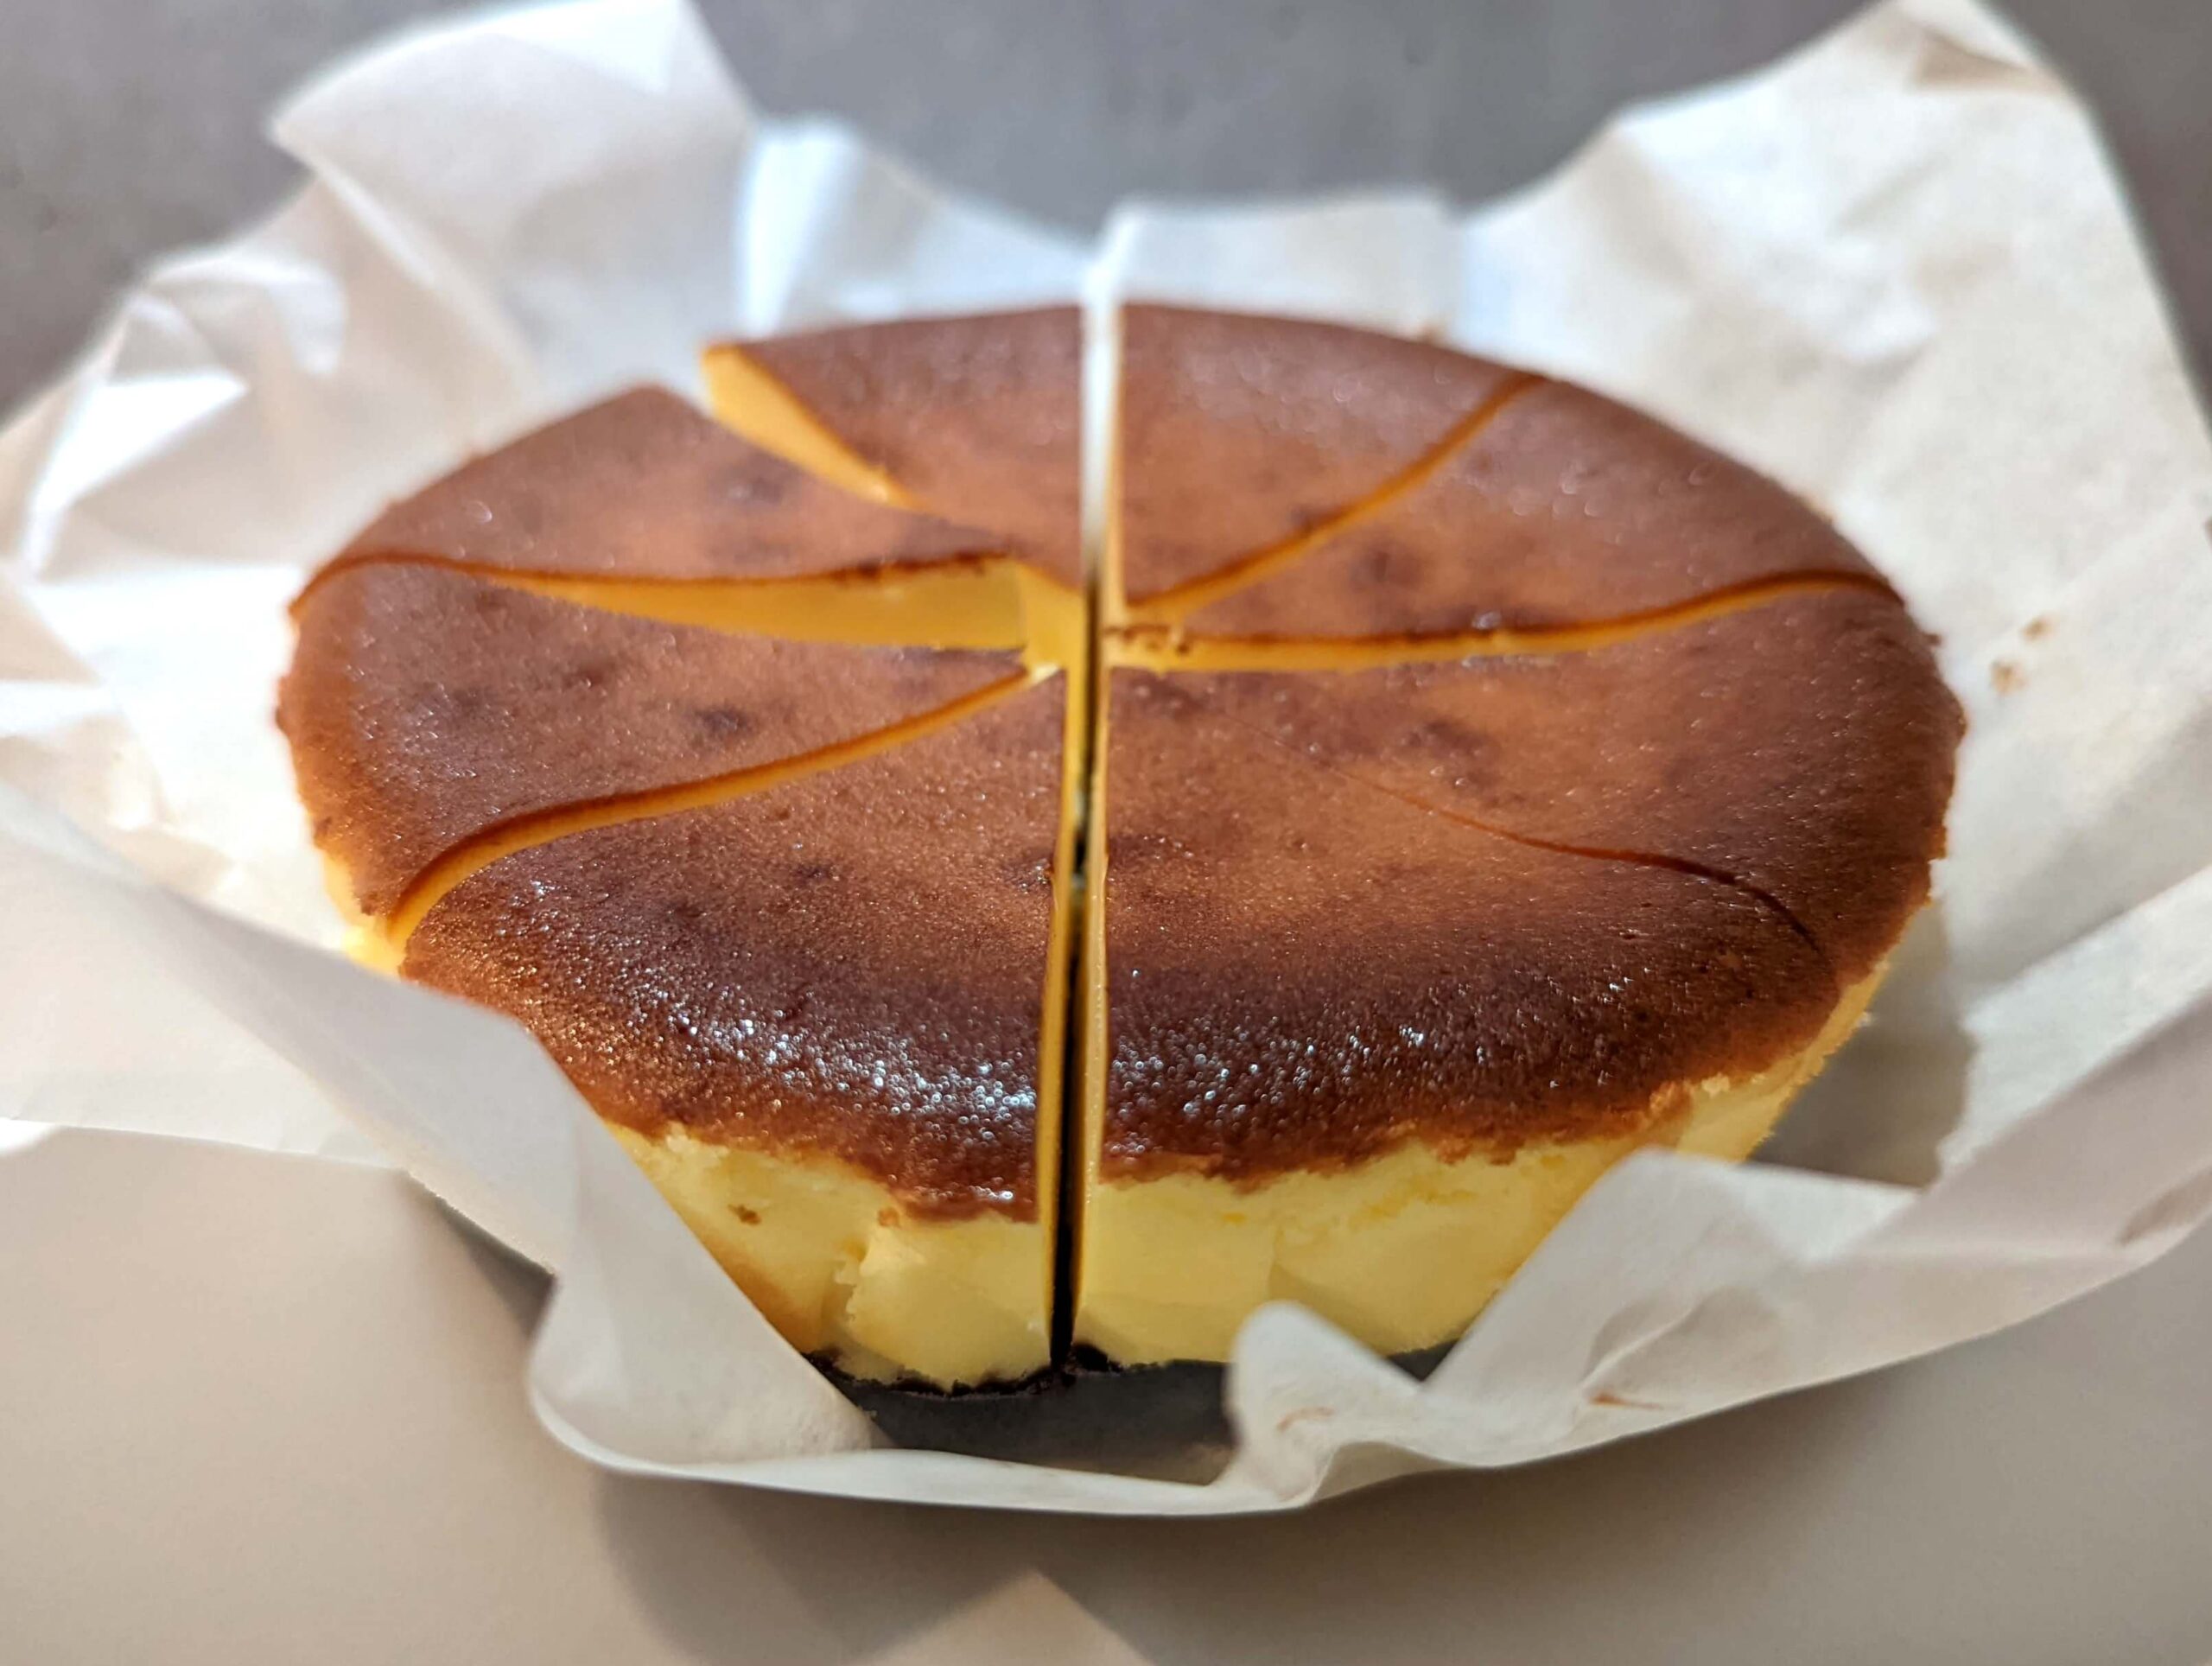 MYCAPTAIN CHEESE TOKYO(マイキャプテンチーズトーキョー)の冷凍のまま食べられるマイキャプテンチーズケーキ (8)